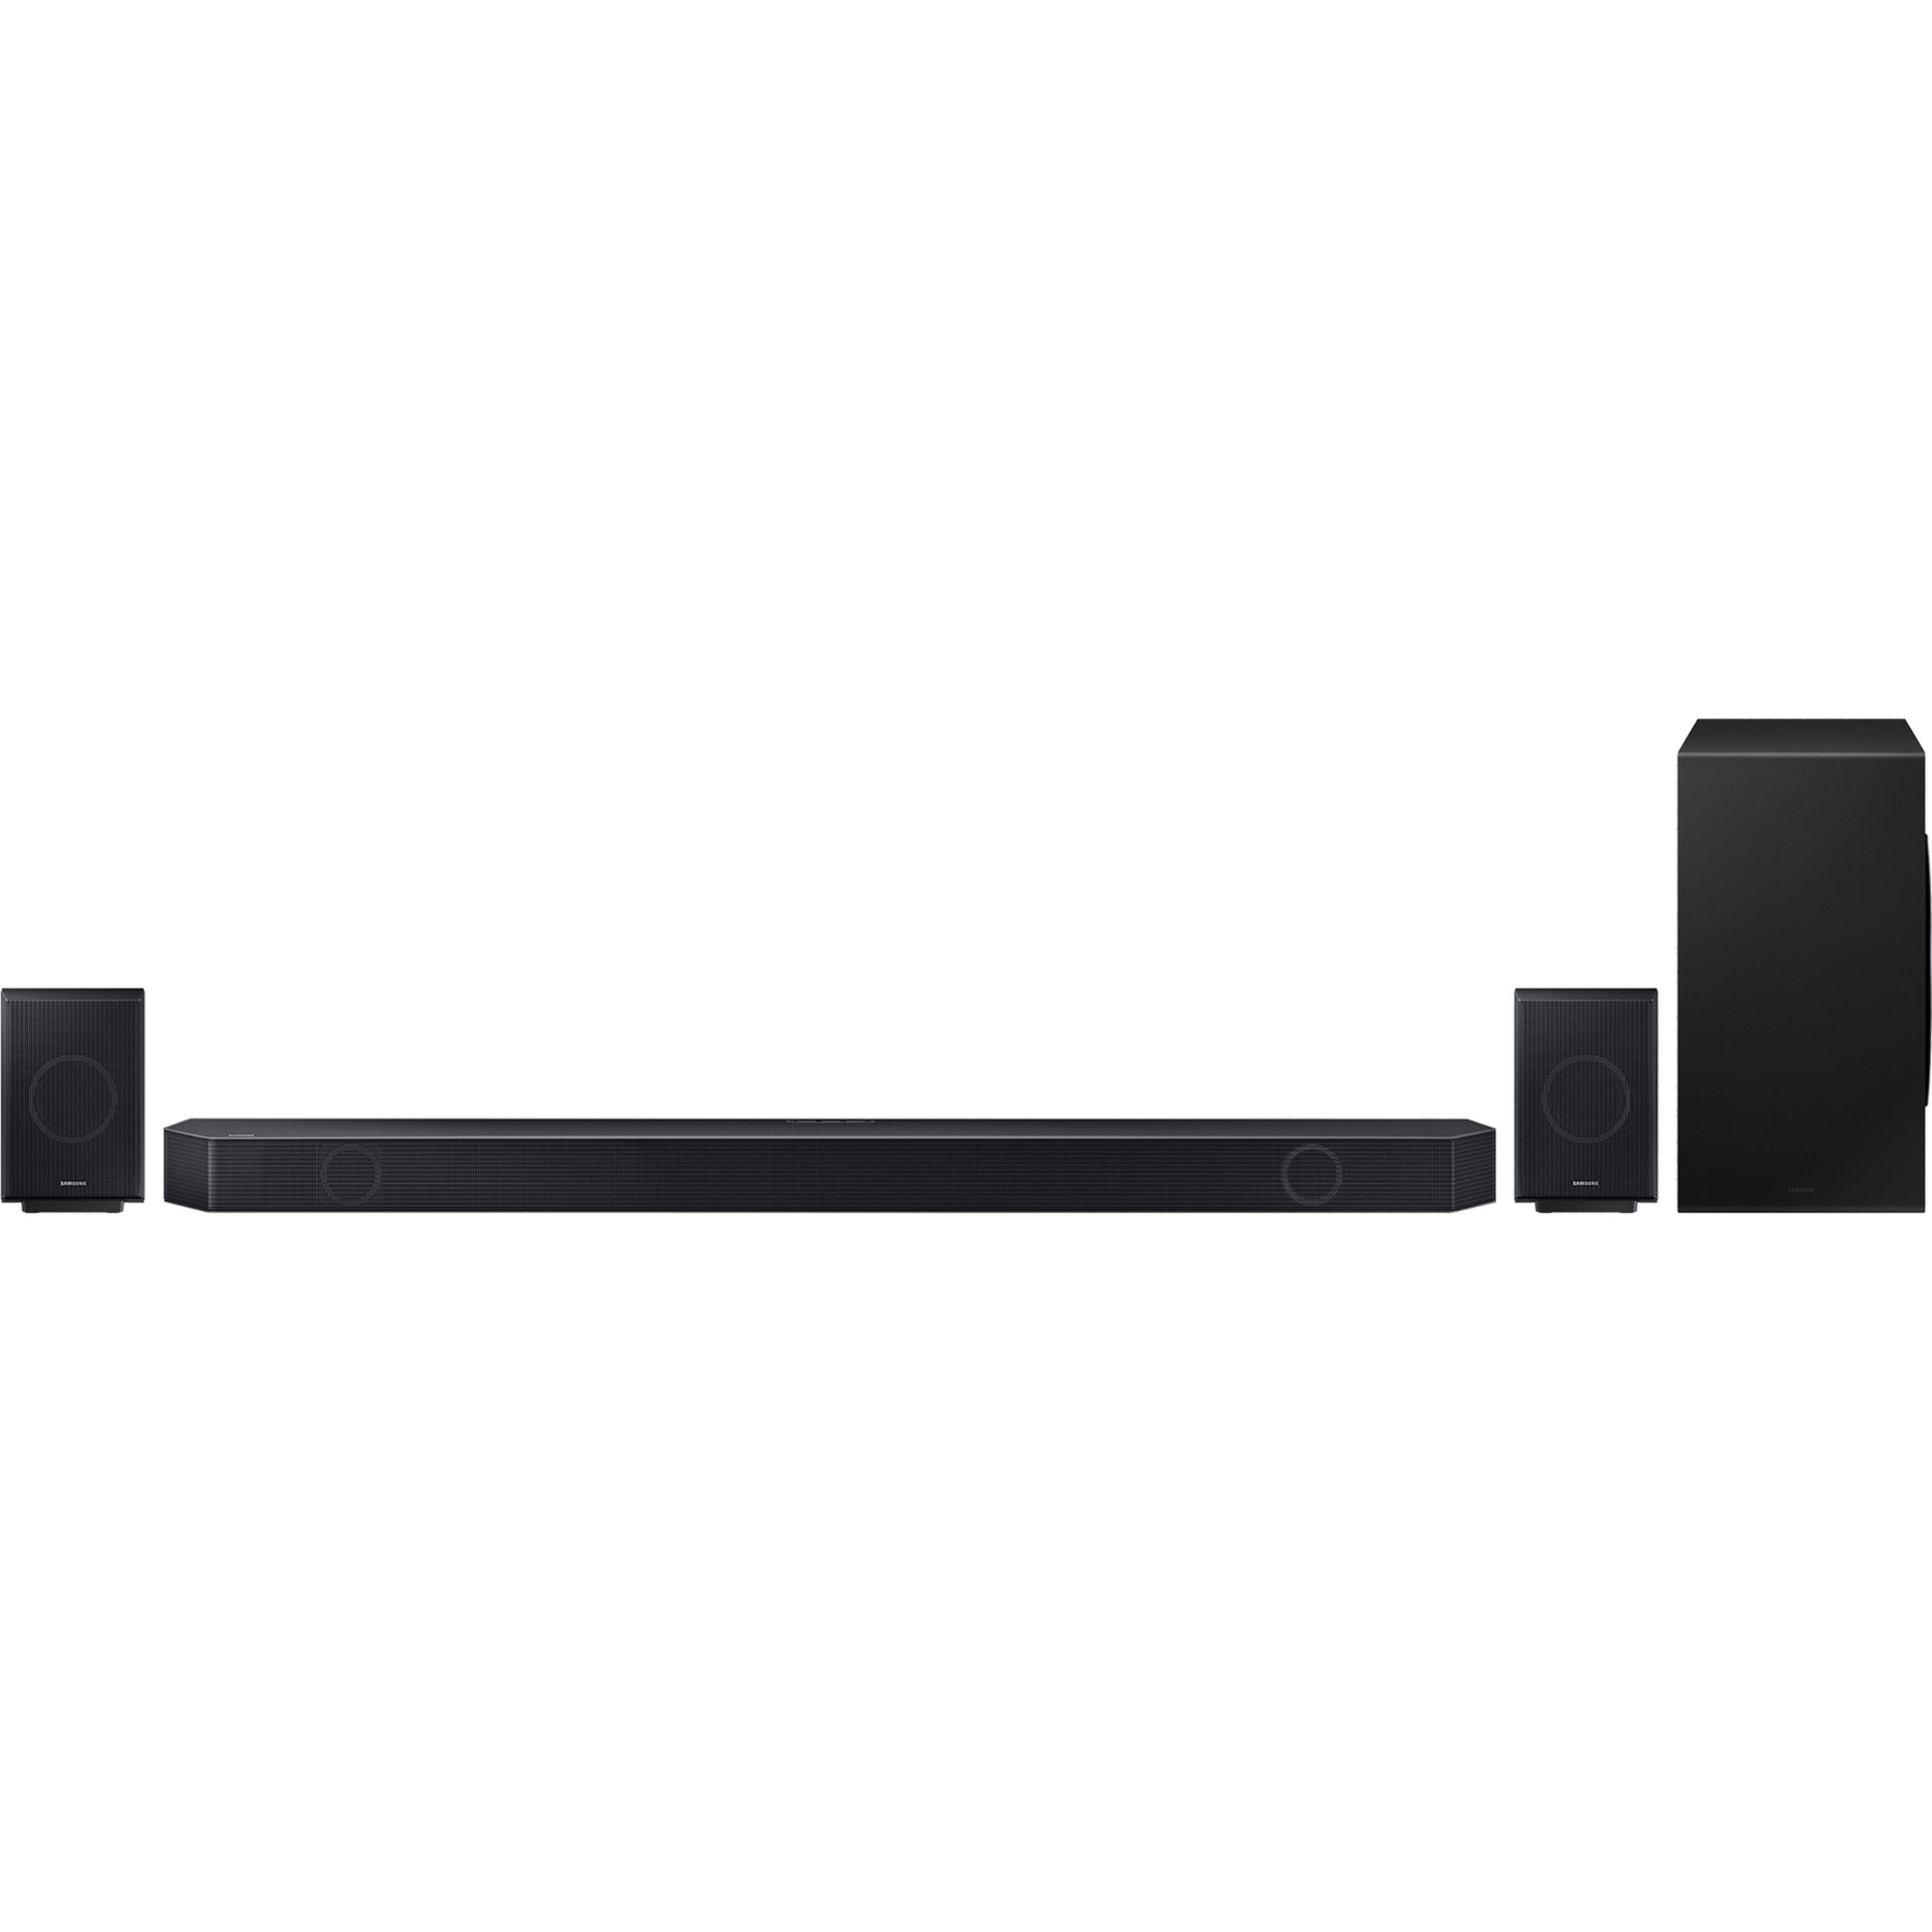 SAMSUNG HW-Q990C/XU 11.1.4 Wireless Sound Bar with Dolby Atmos & Amazon Alexa, Black